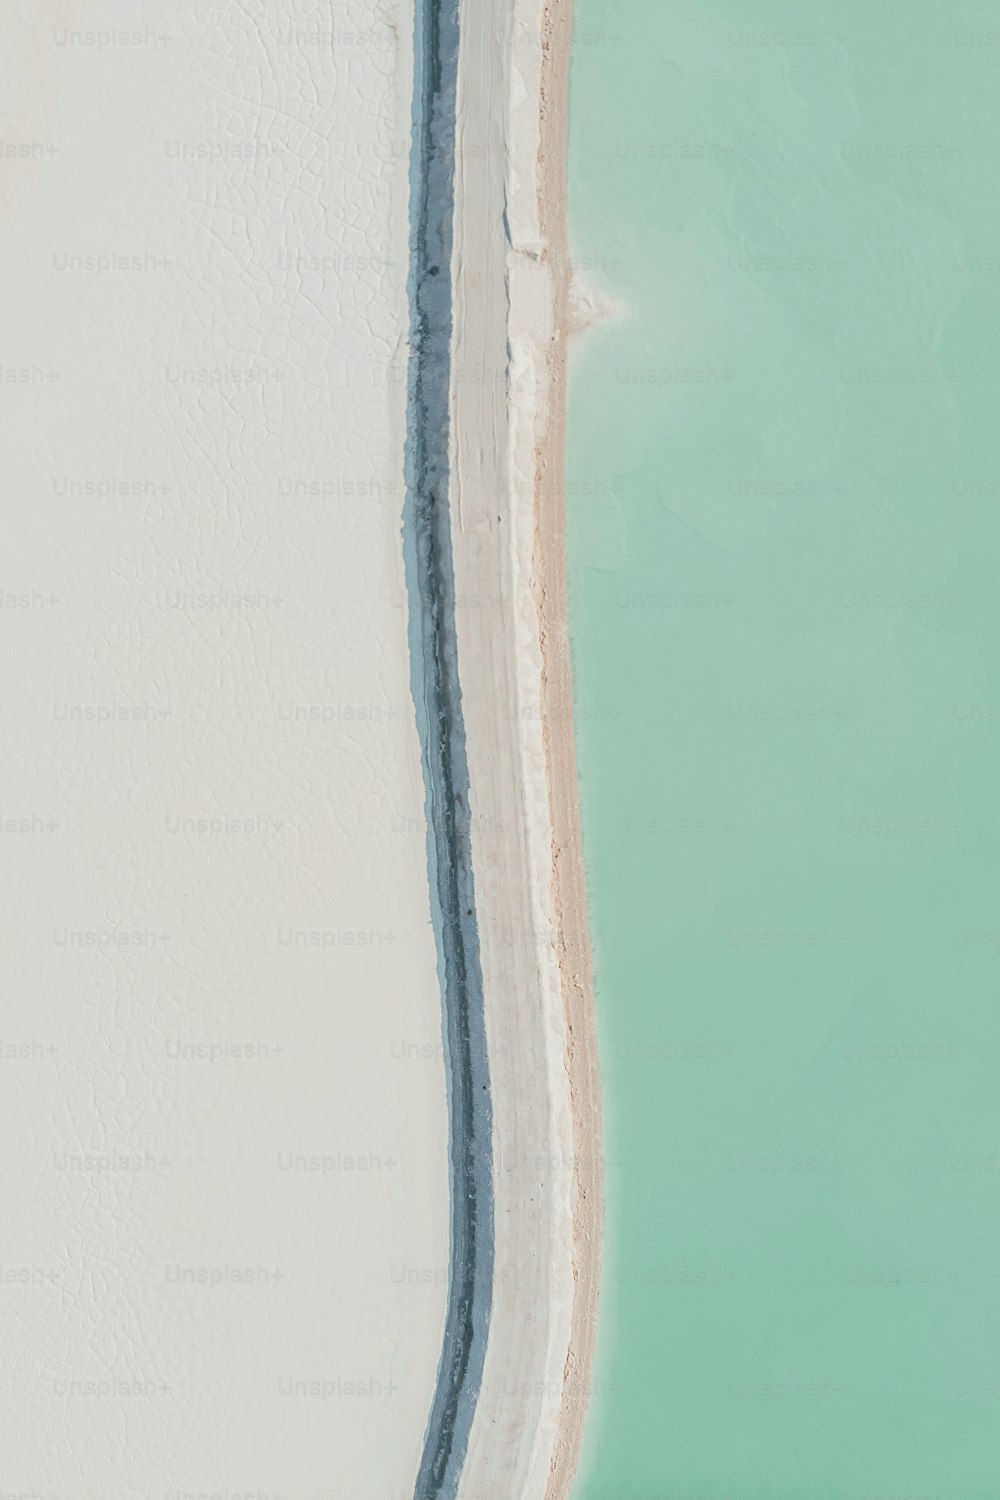 砂浜の上でサー�フボードに乗る男